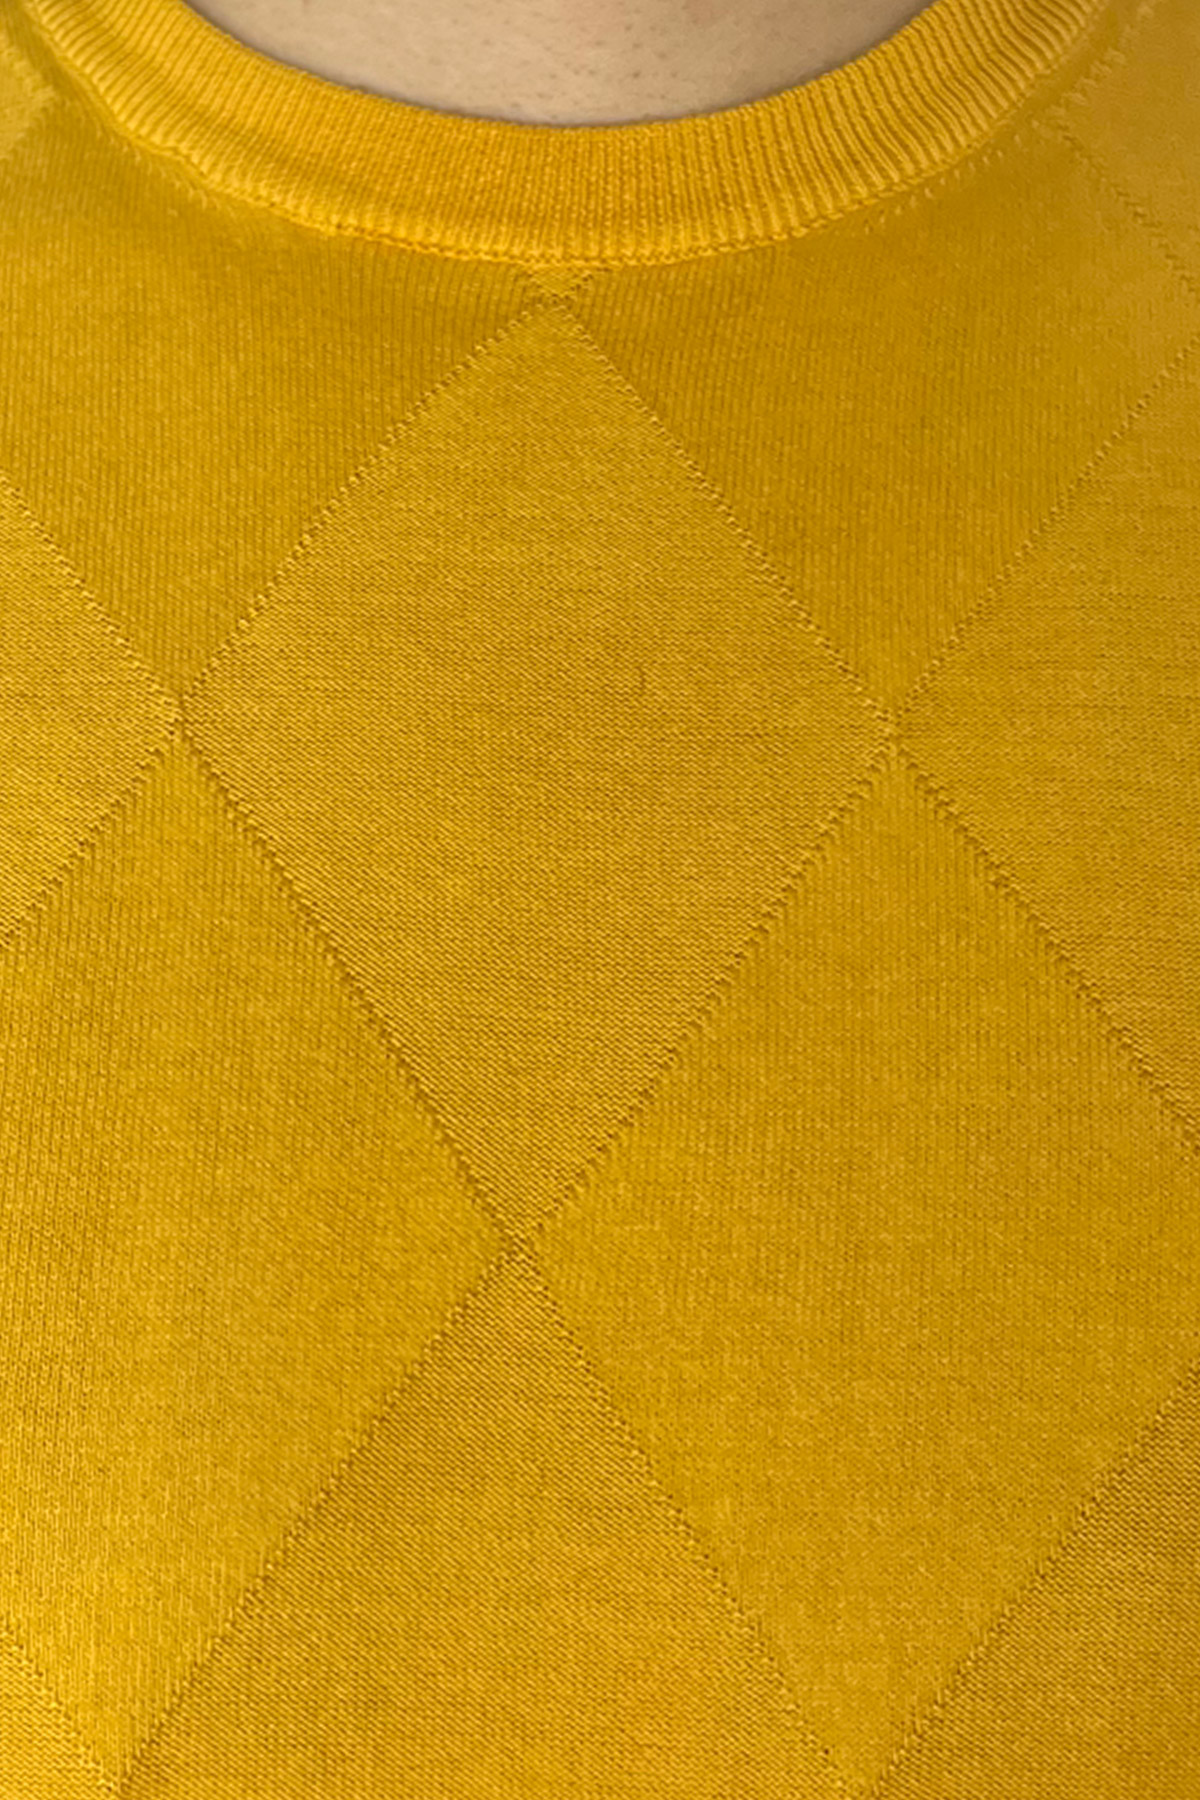 Maglioncino da uomo Giallo mezze maniche 100% cotone di filo finezza 14 trama rombi tono su tono